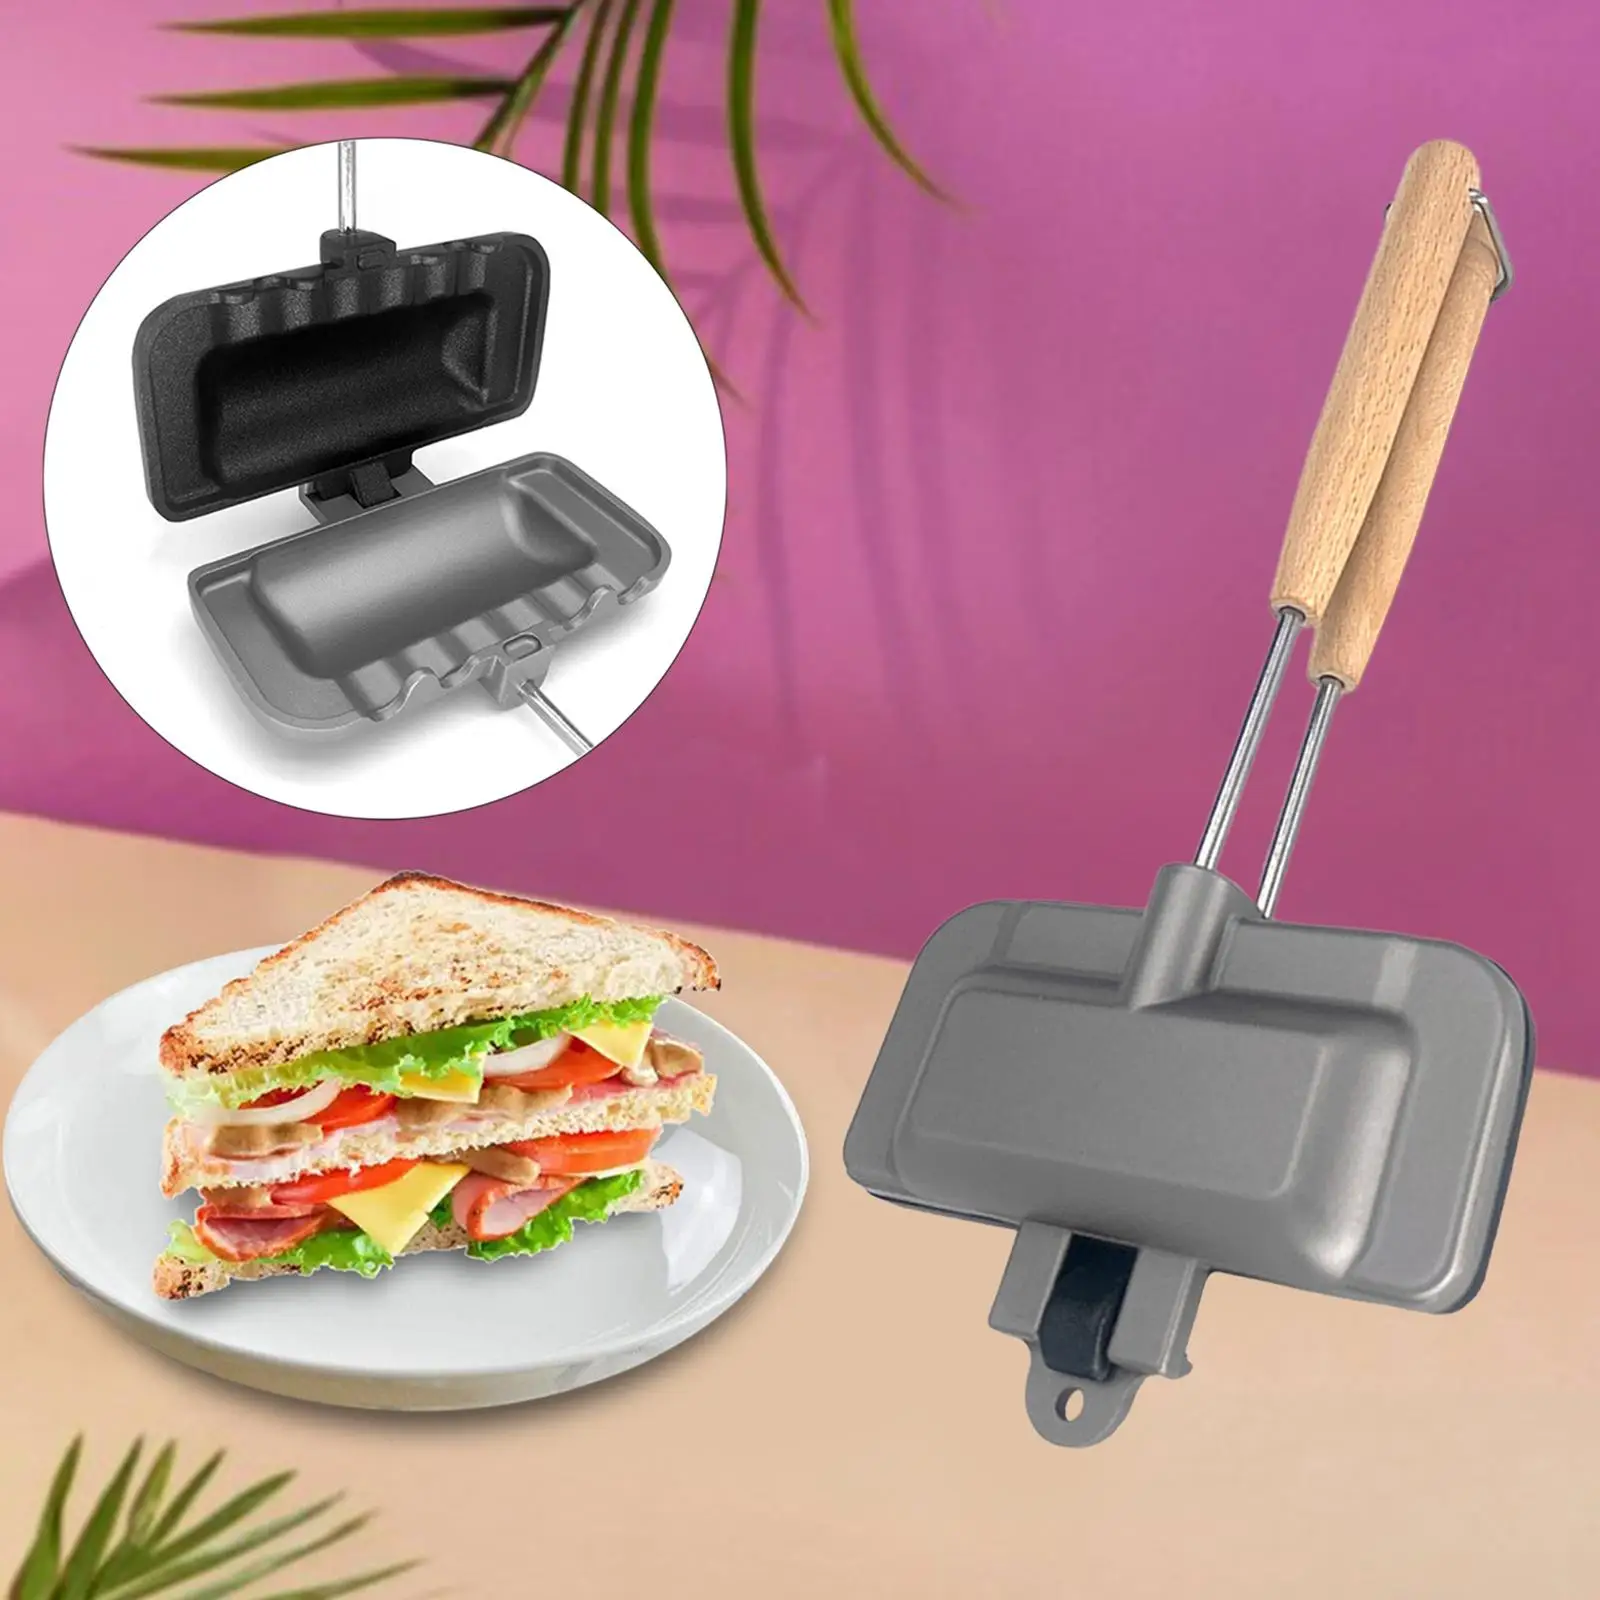 Nonstick Sandwich Maker, Baking Pan for Home Restaurant Dining Room